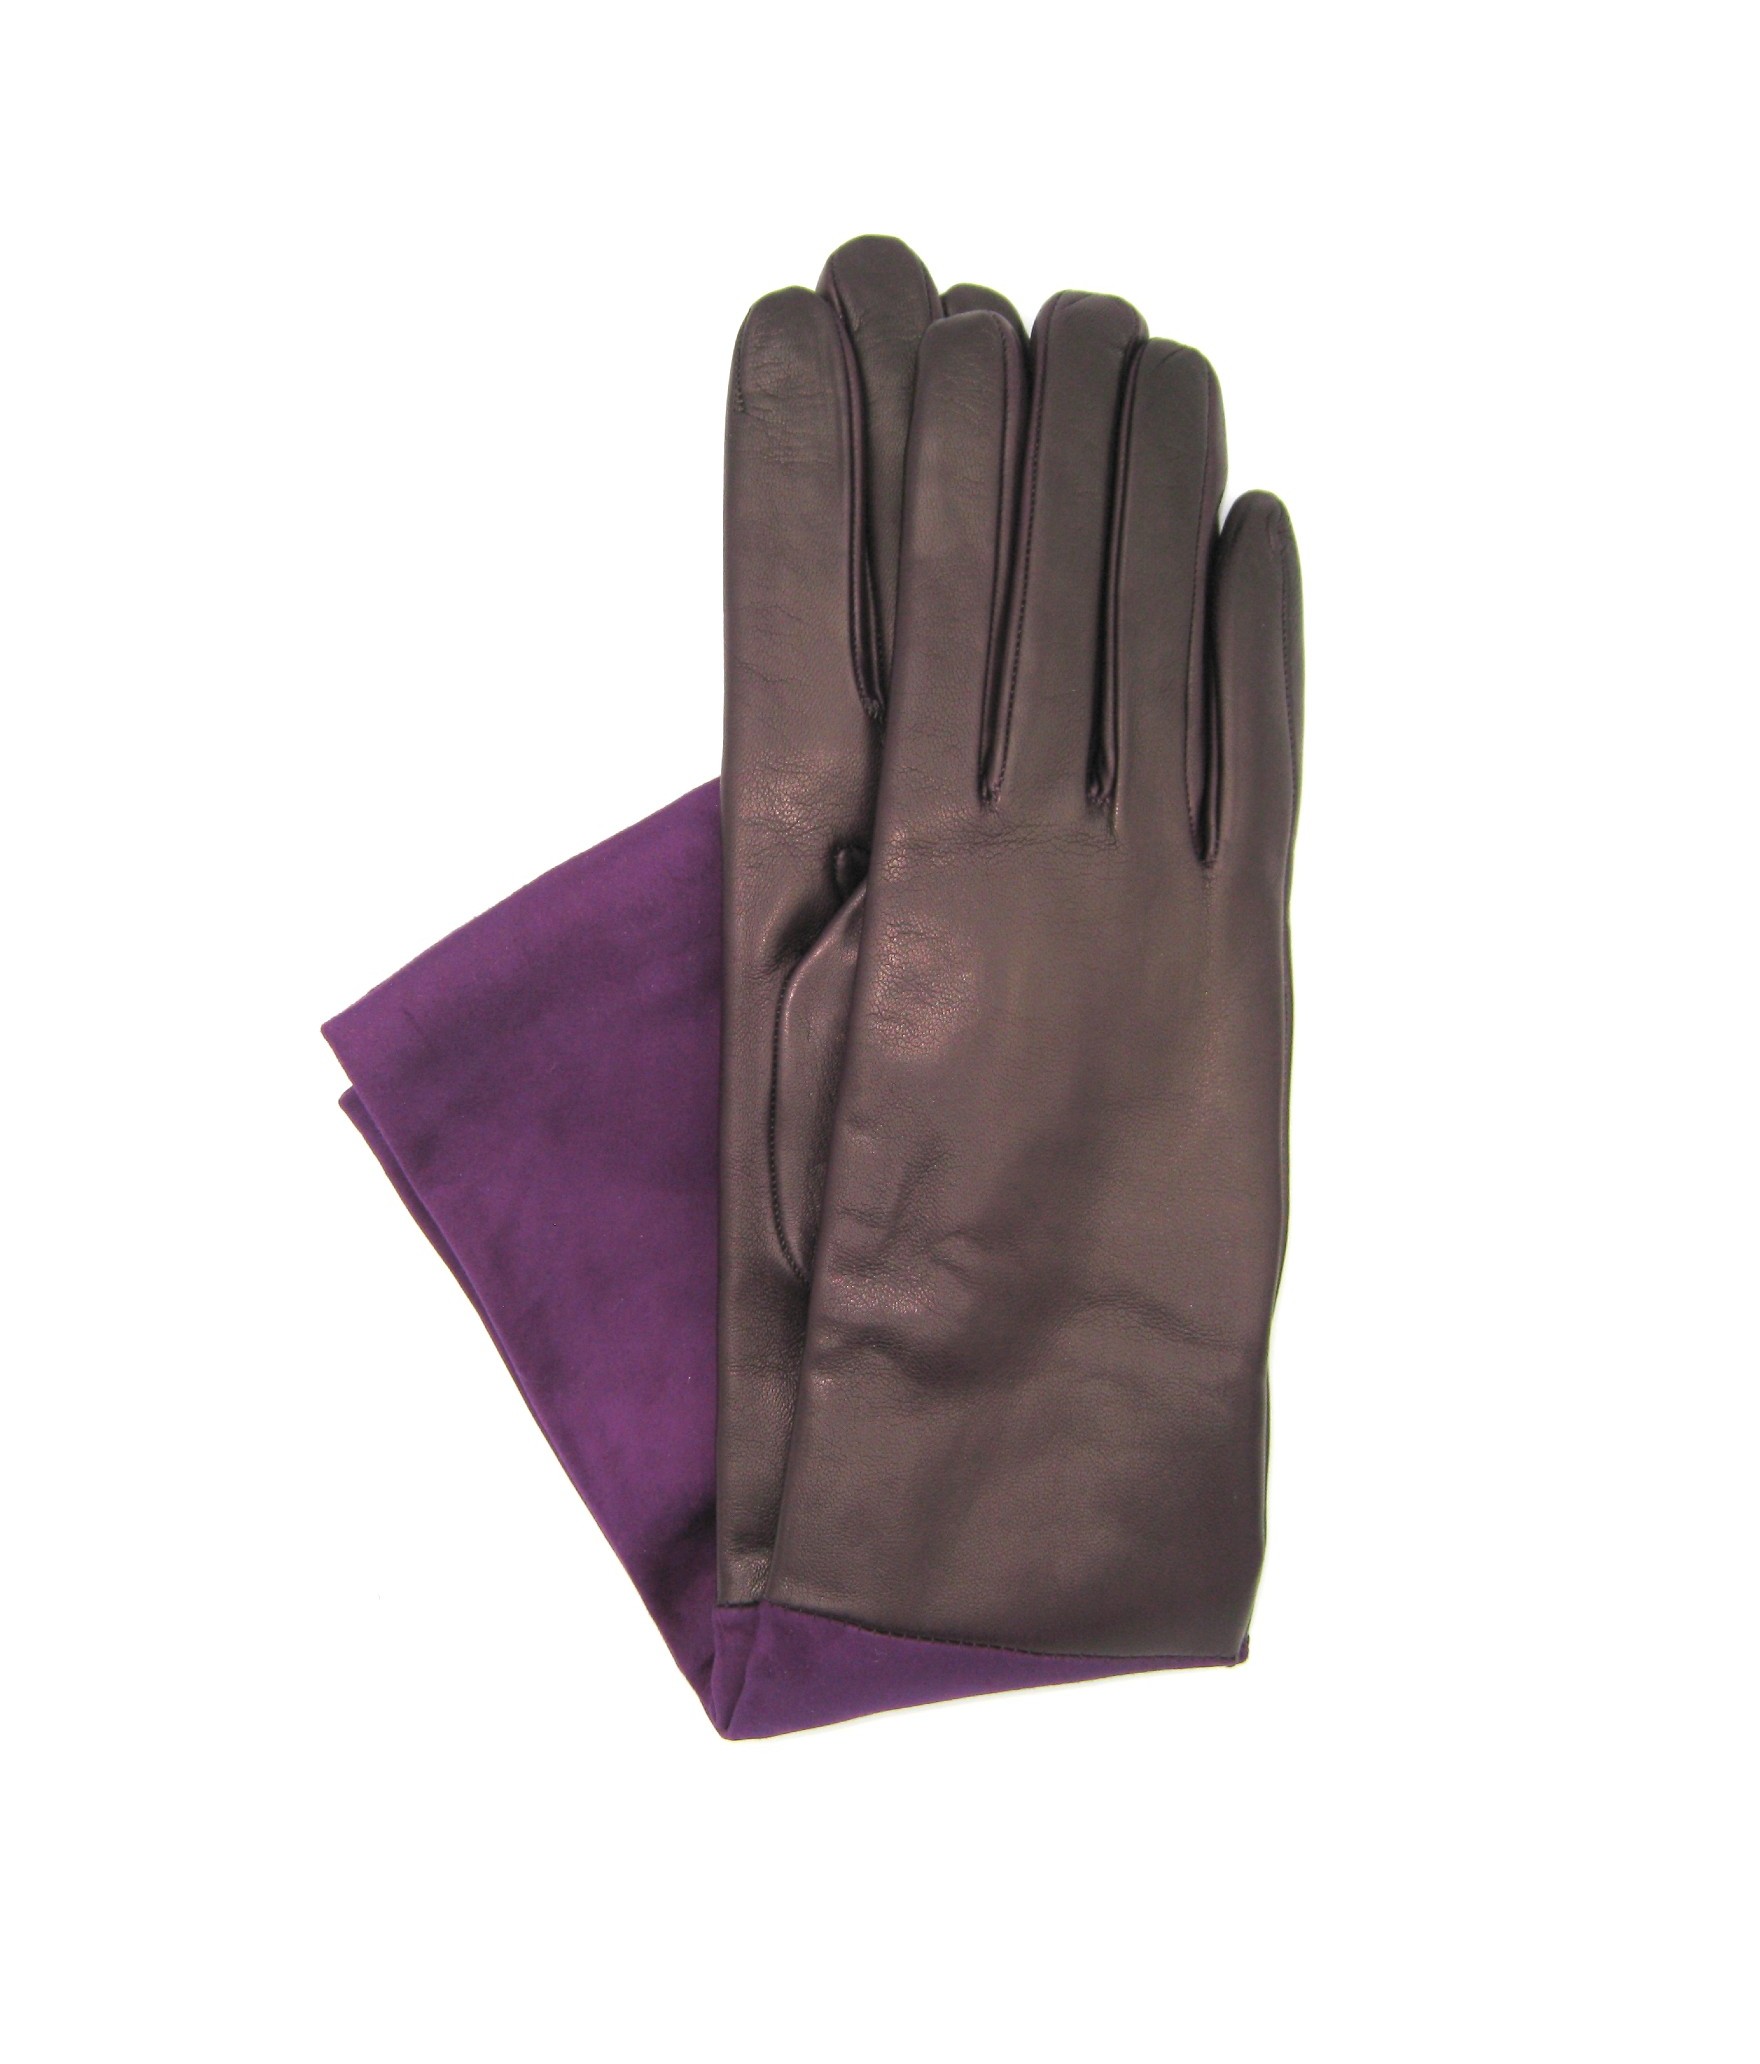 Damen Fashion Handschuhe aus Nappa und Wildleder 8bt kaschmir